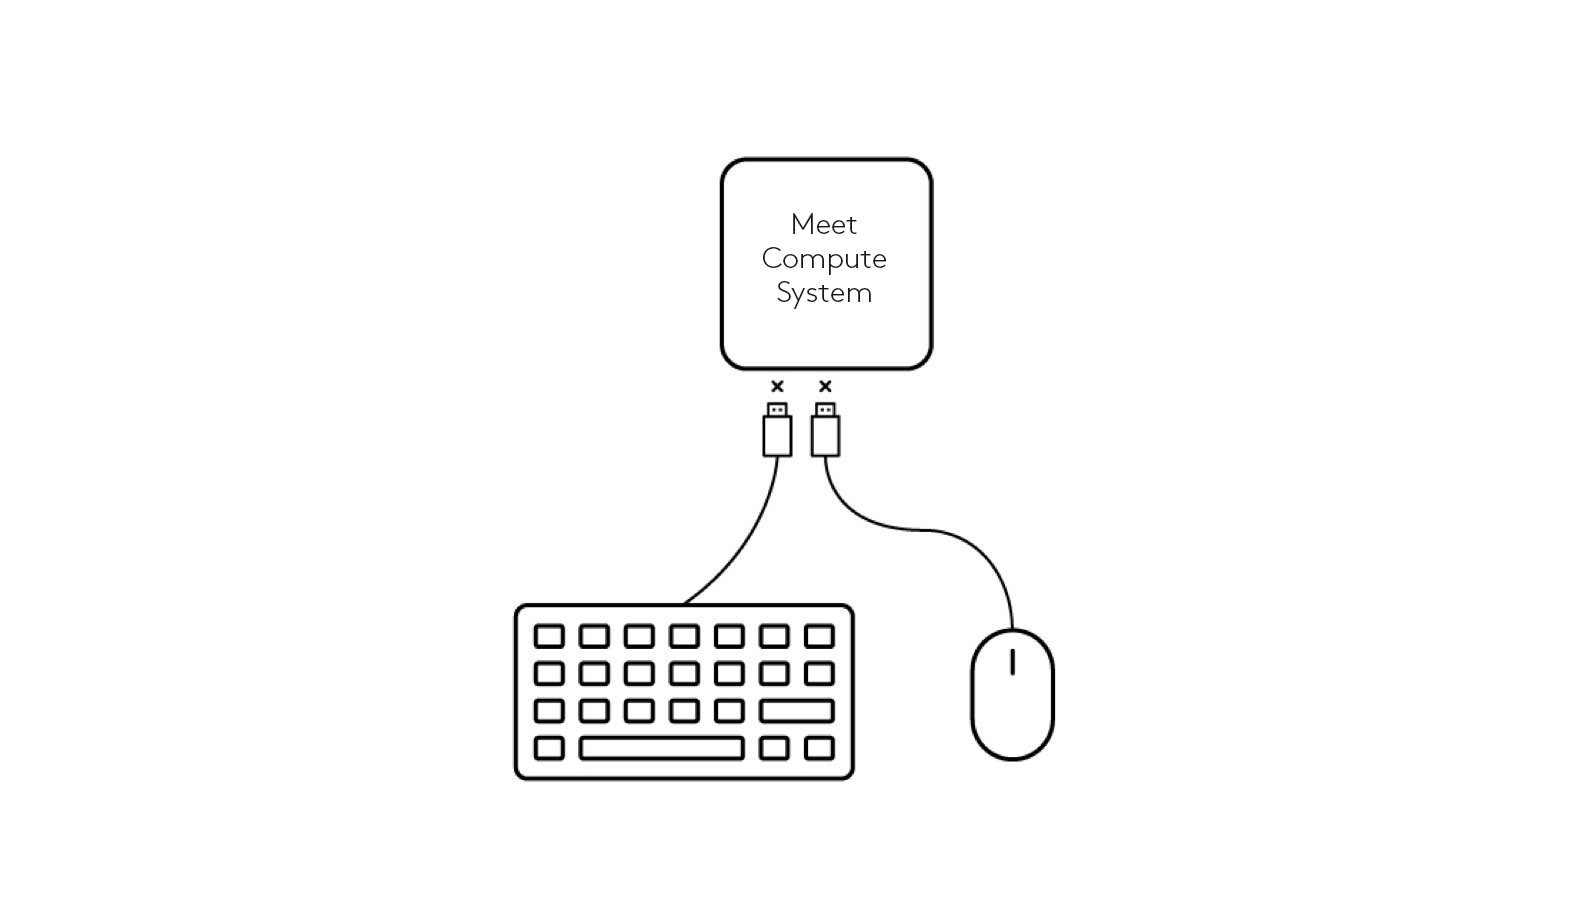 Diagramma delle connessioni della tastiera e del mouse a Meet Compute System